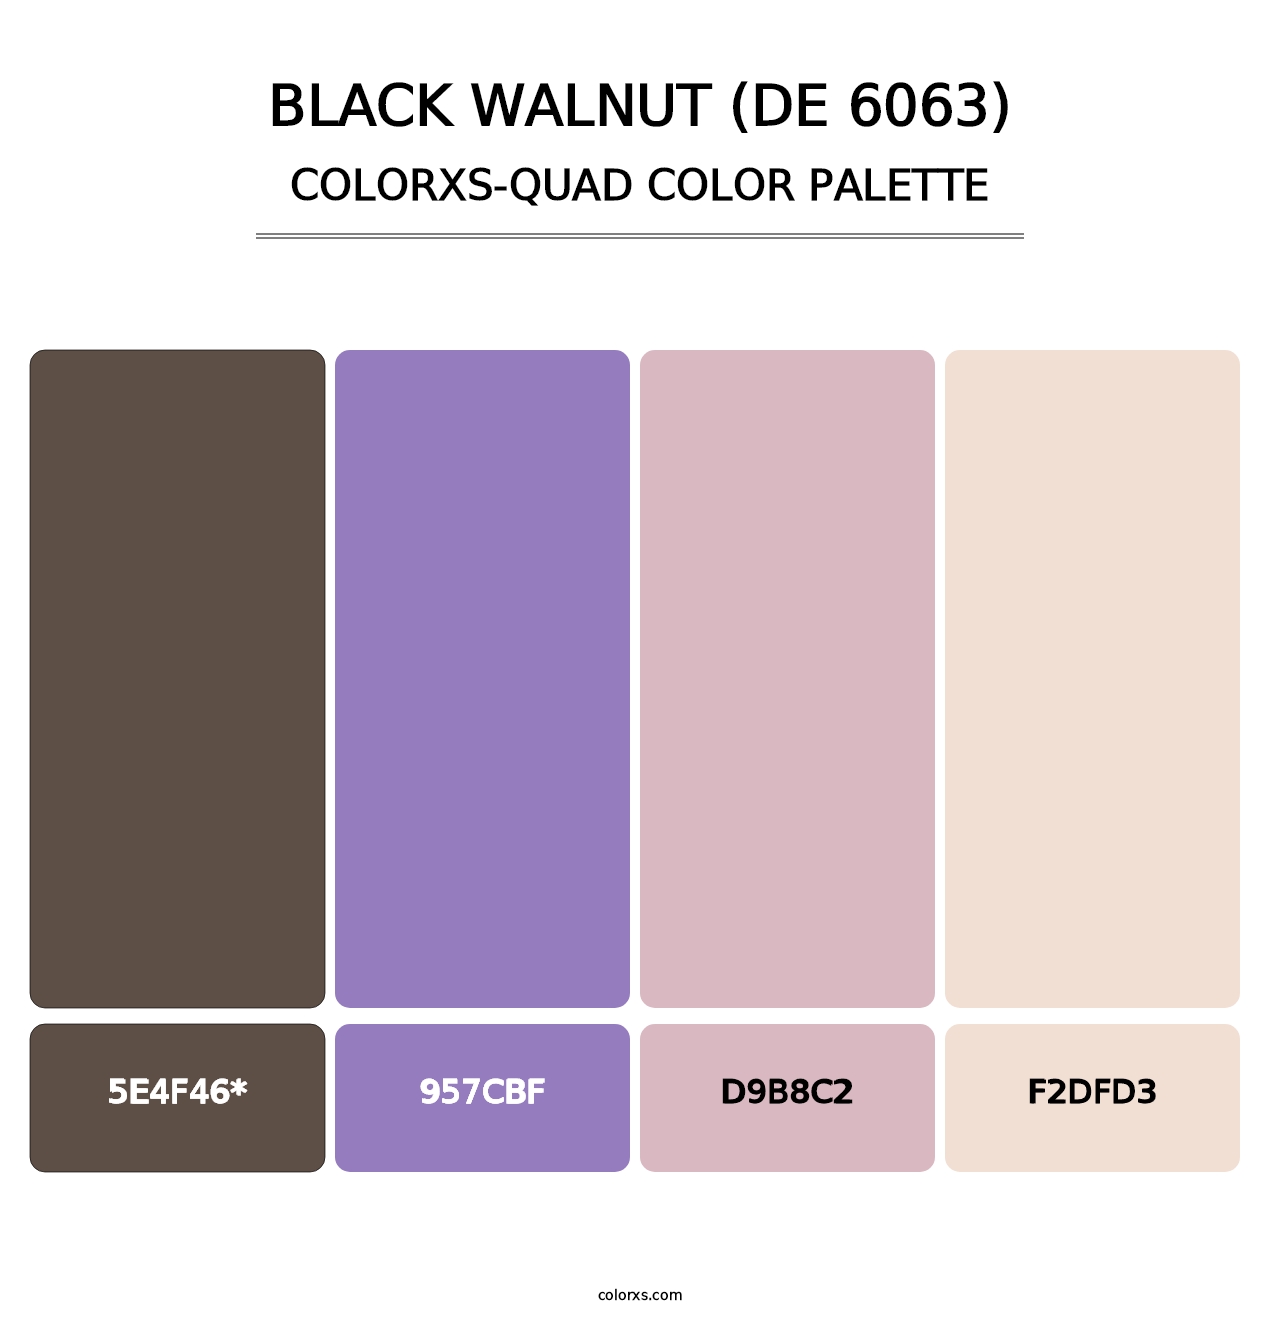 Black Walnut (DE 6063) - Colorxs Quad Palette